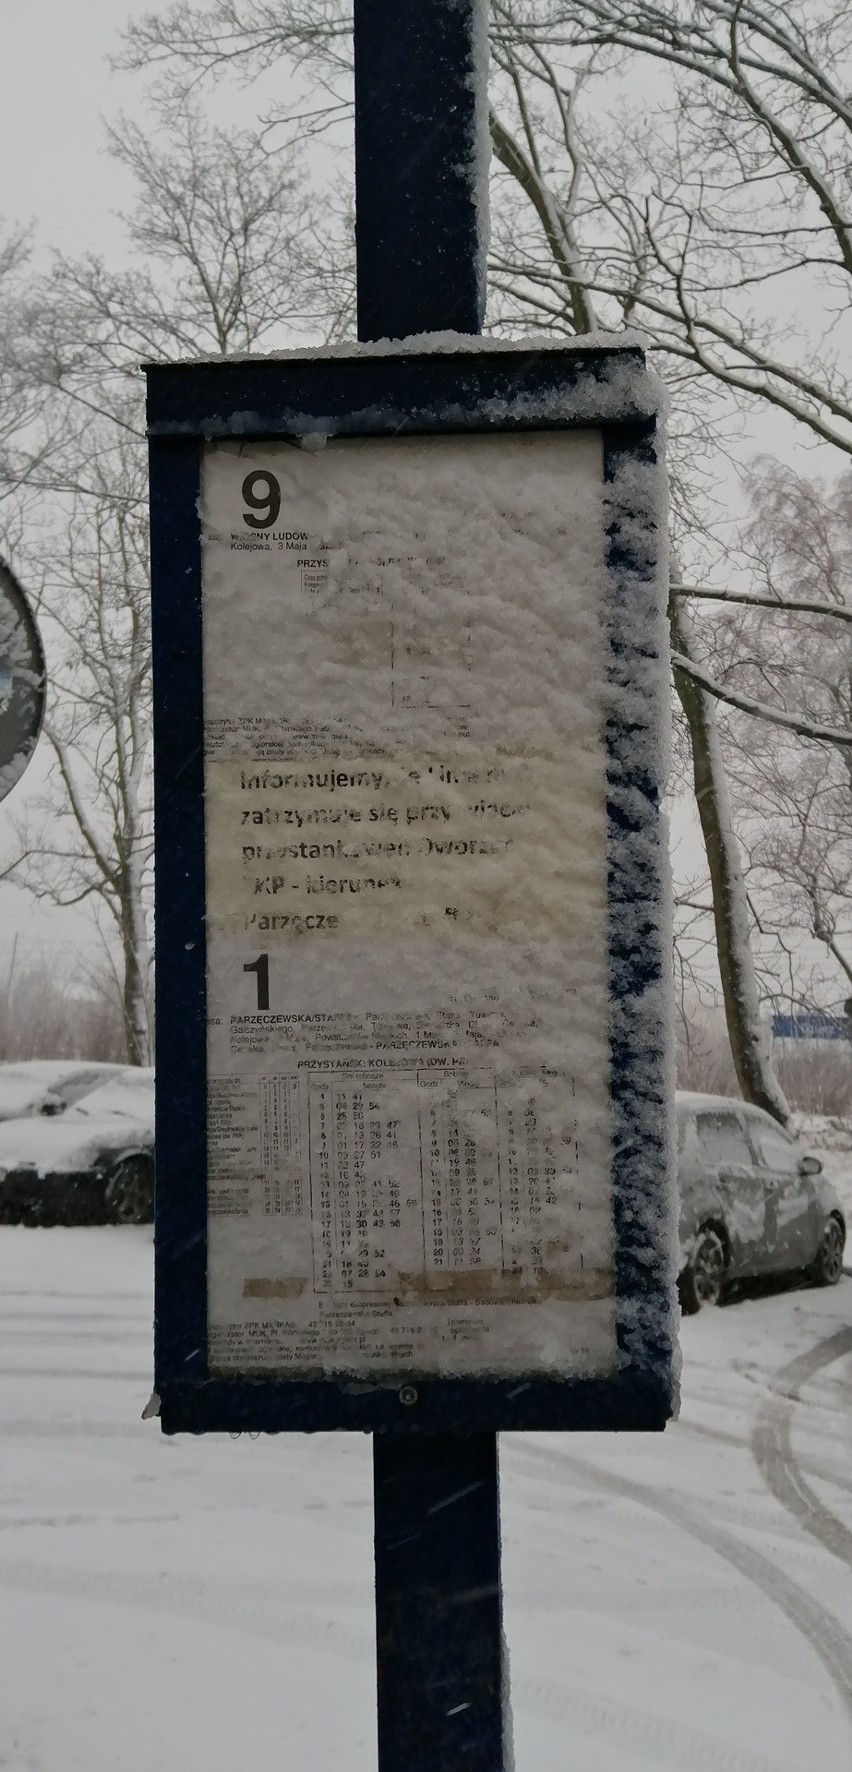 Śnieg sparaliżował komunikację miejską i kolej w Zgierzu. ZDJĘCIA